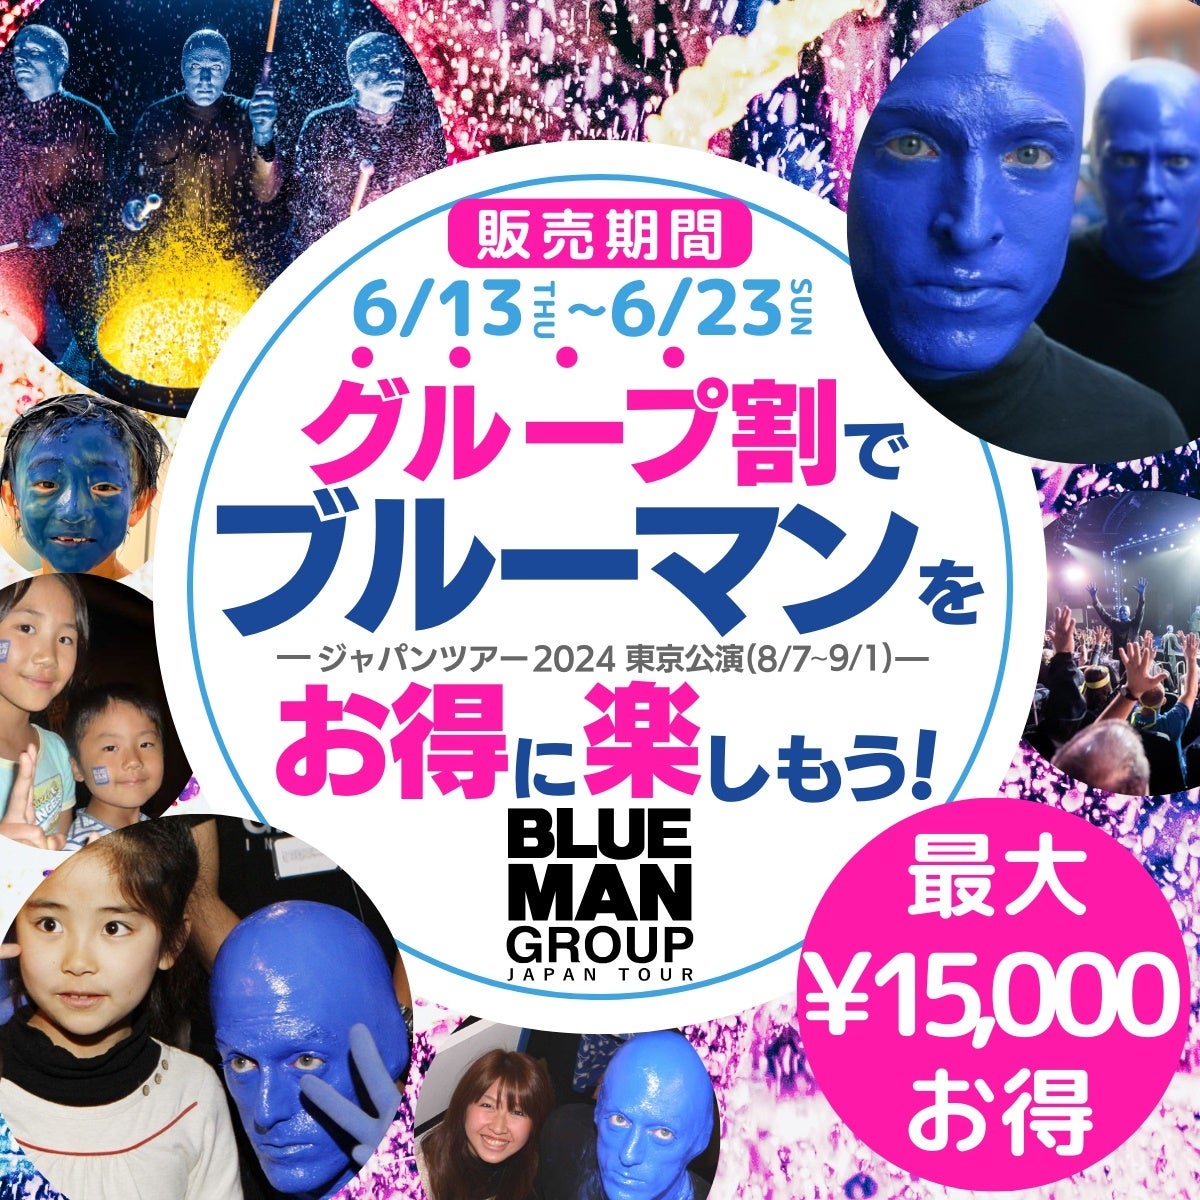 東急歌舞伎町タワーでボカロDJ×初音ミクのファッションショーを開催　出演情報を公開・特別DJイベントチケット販売開始